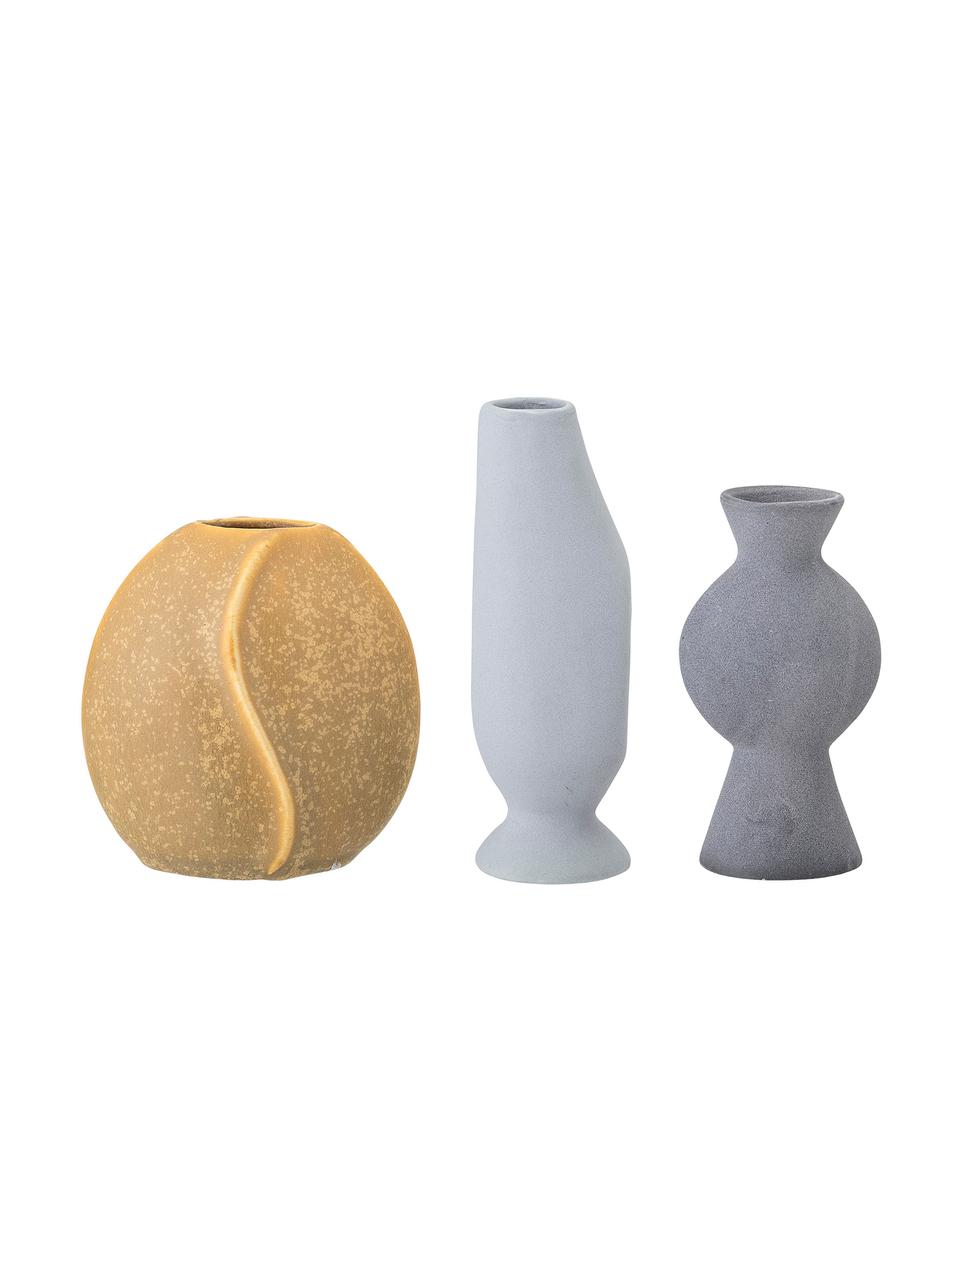 Kleine handgefertigtes Vasen-Set Lubava, 3-tlg., Steingut, Gelb, Hellgrau, Grau, Set mit verschiedenen Größen